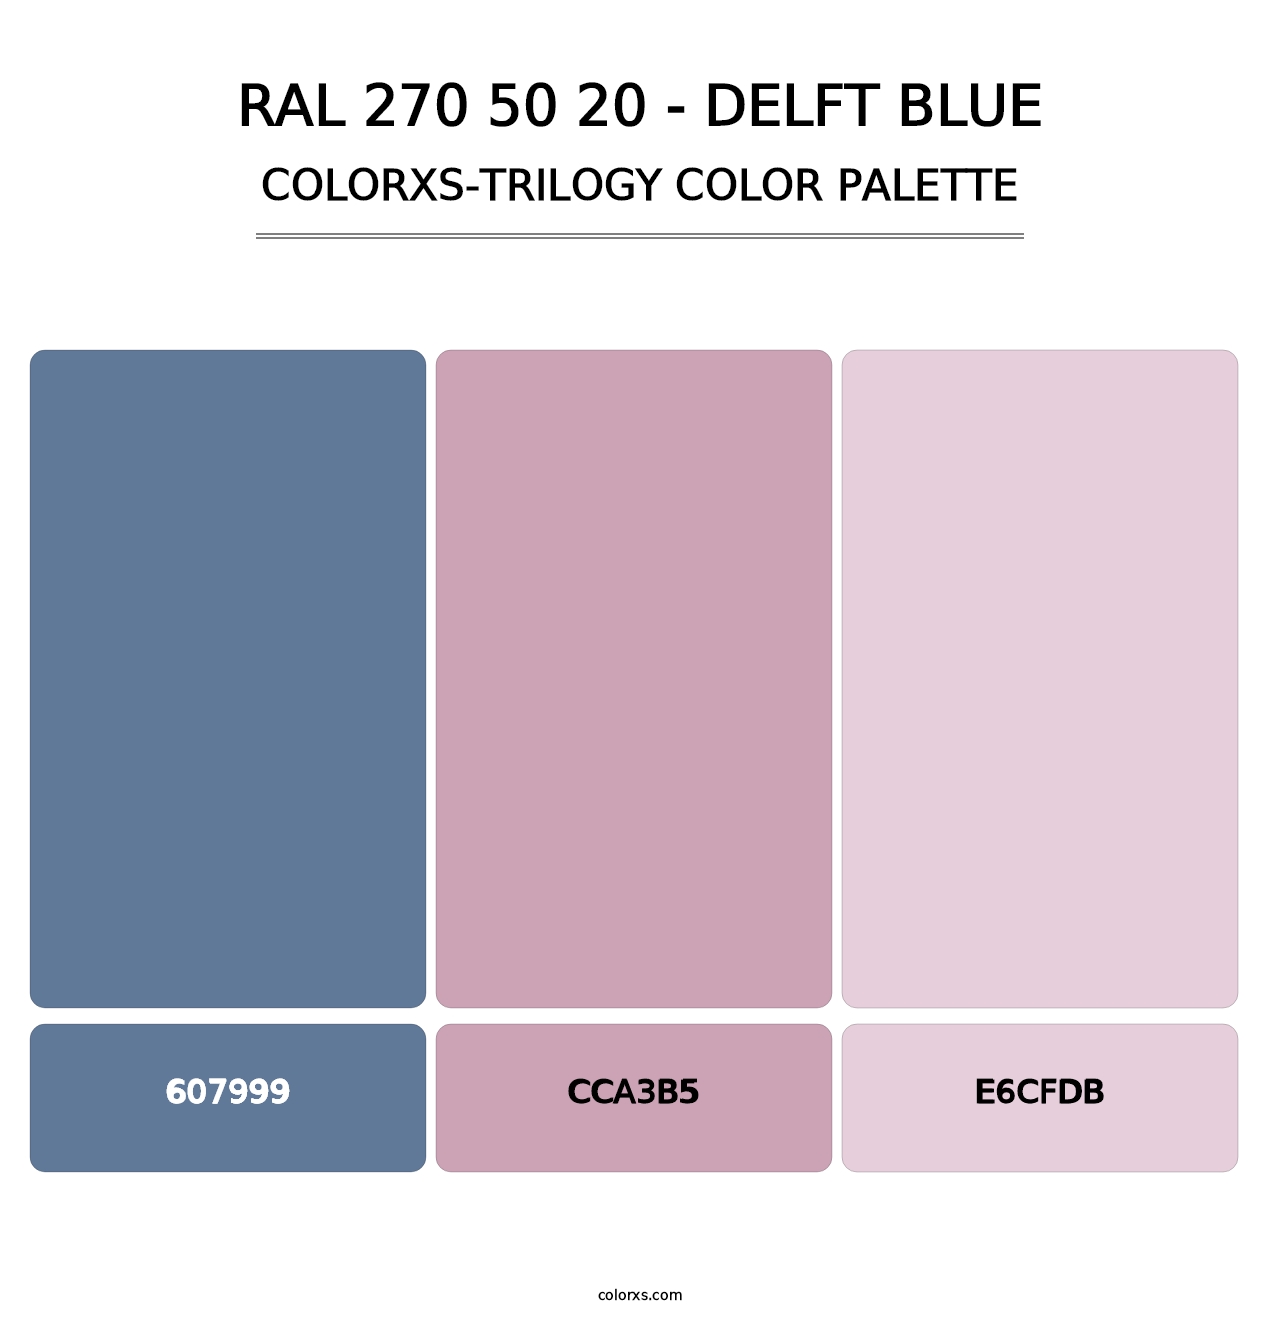 RAL 270 50 20 - Delft Blue - Colorxs Trilogy Palette